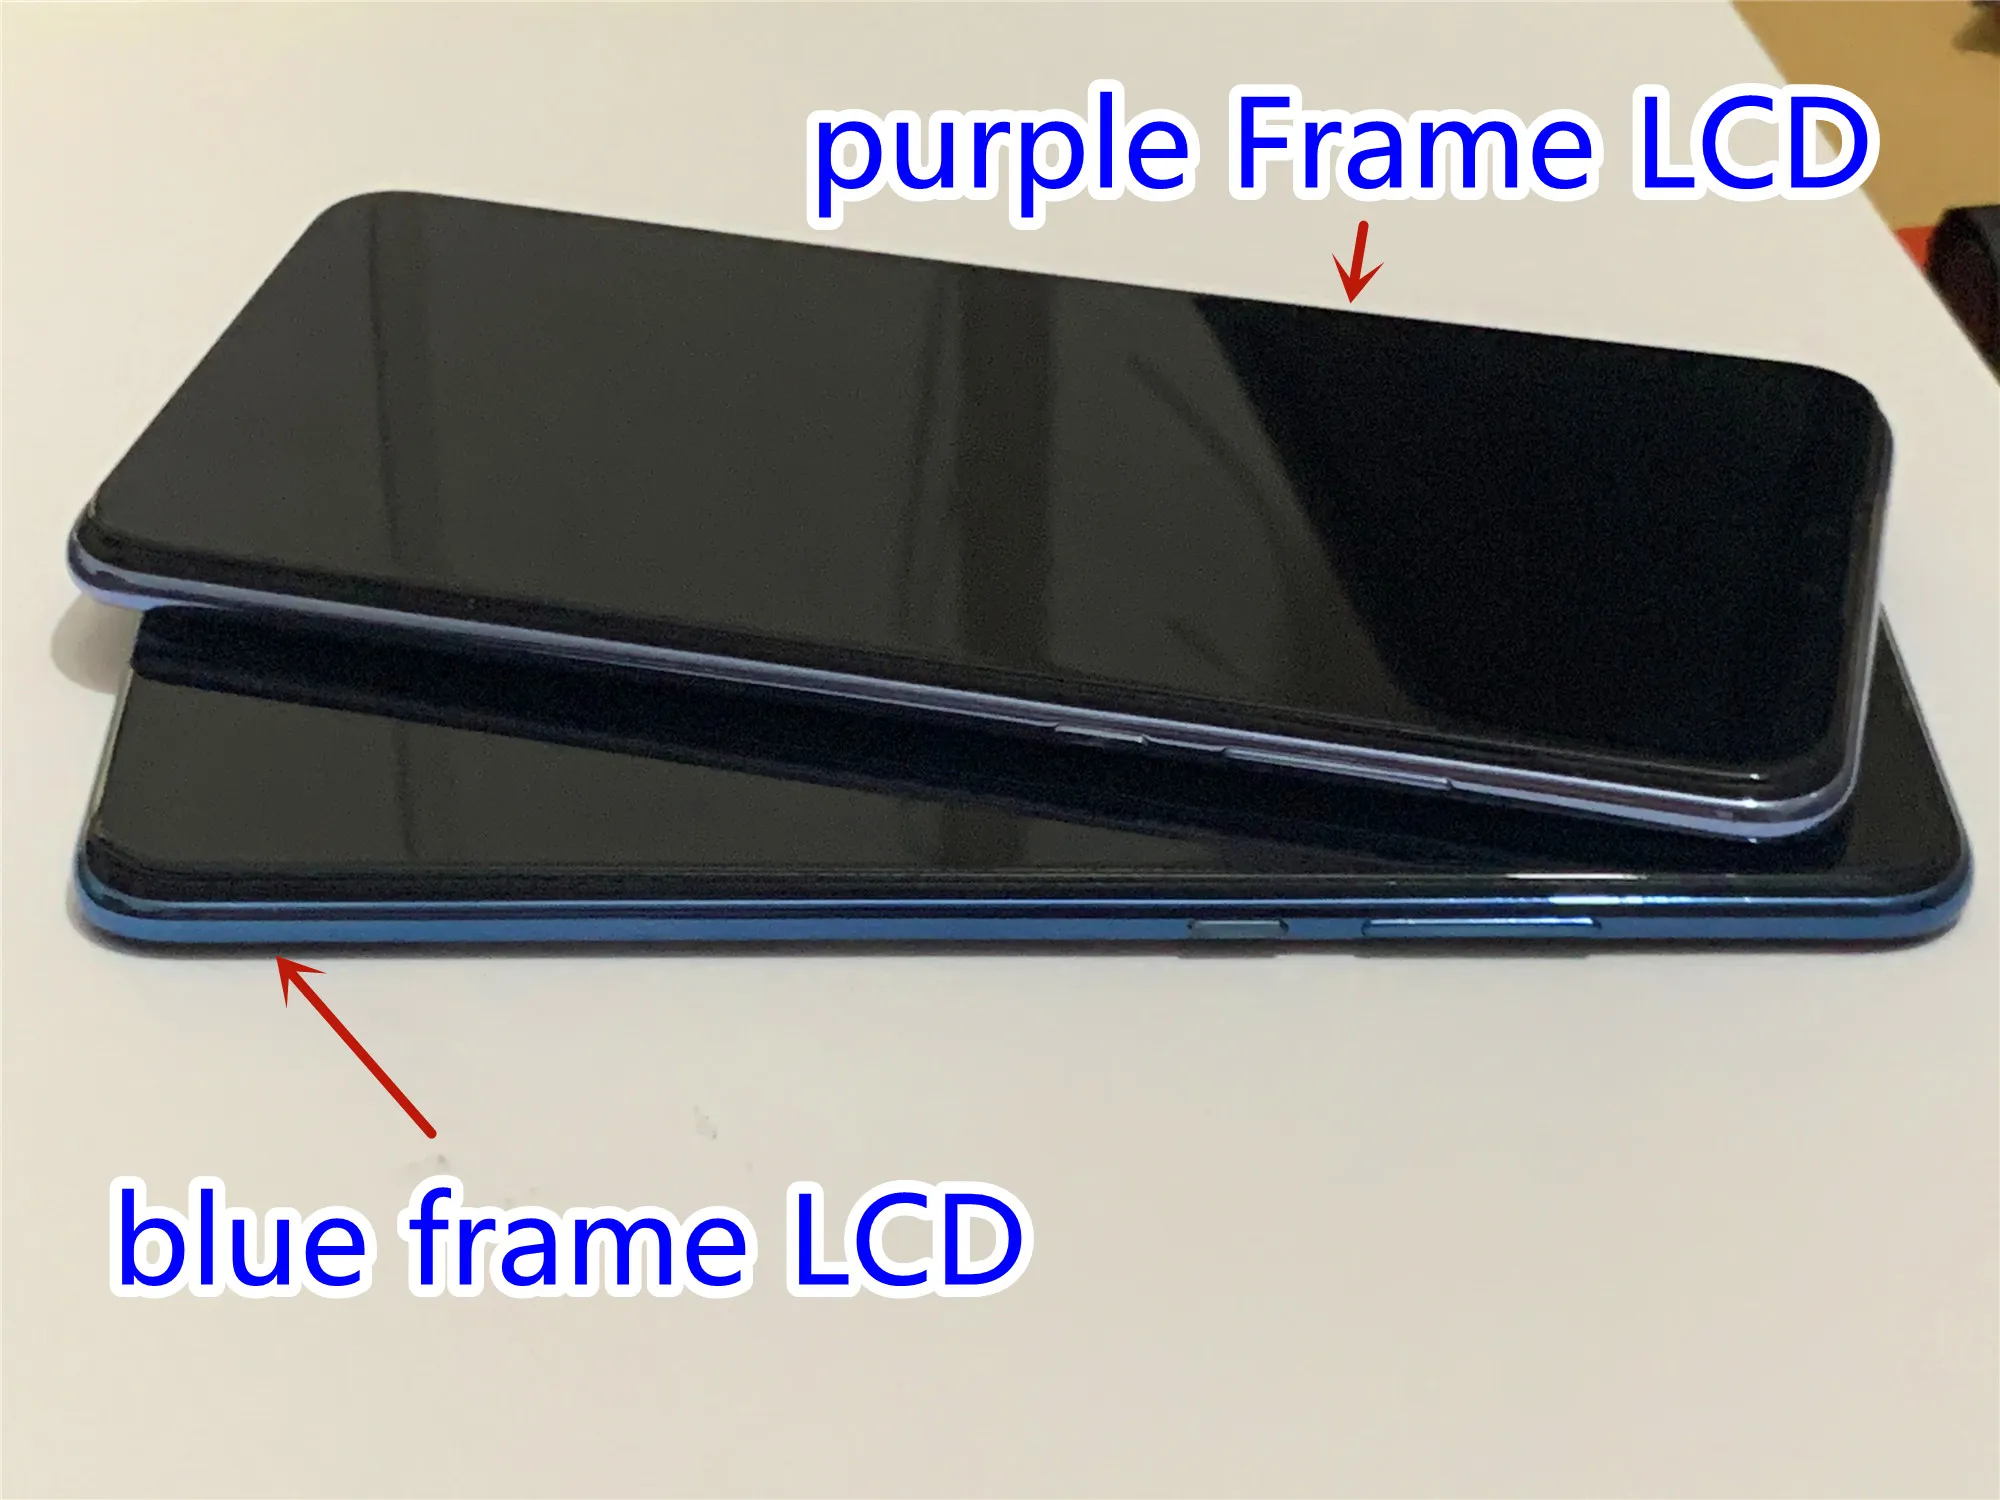 Текст За HUAWEI Y9 2019 LCD дисплей на Екрана на дисплея LCD дисплей За HUAWEI Y9 2019 Enjoy 9 Plus Екран JKM-LX1 JKM-LX2 LX3-инчов Сензорен LCD дисплей